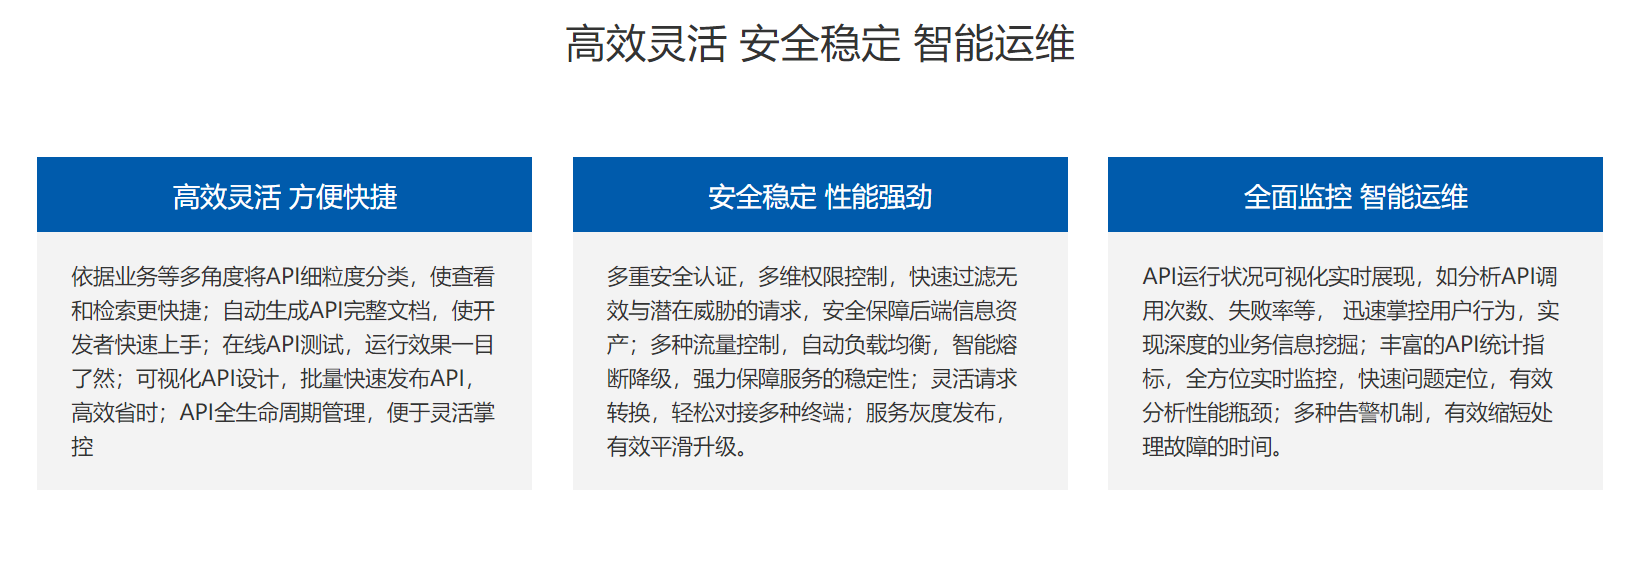 上海天策長(cháng)利信息科技有限公司提供接口開(kāi)發(fā),api開(kāi)發(fā),嵌入式系統開(kāi)發(fā)等專業服務